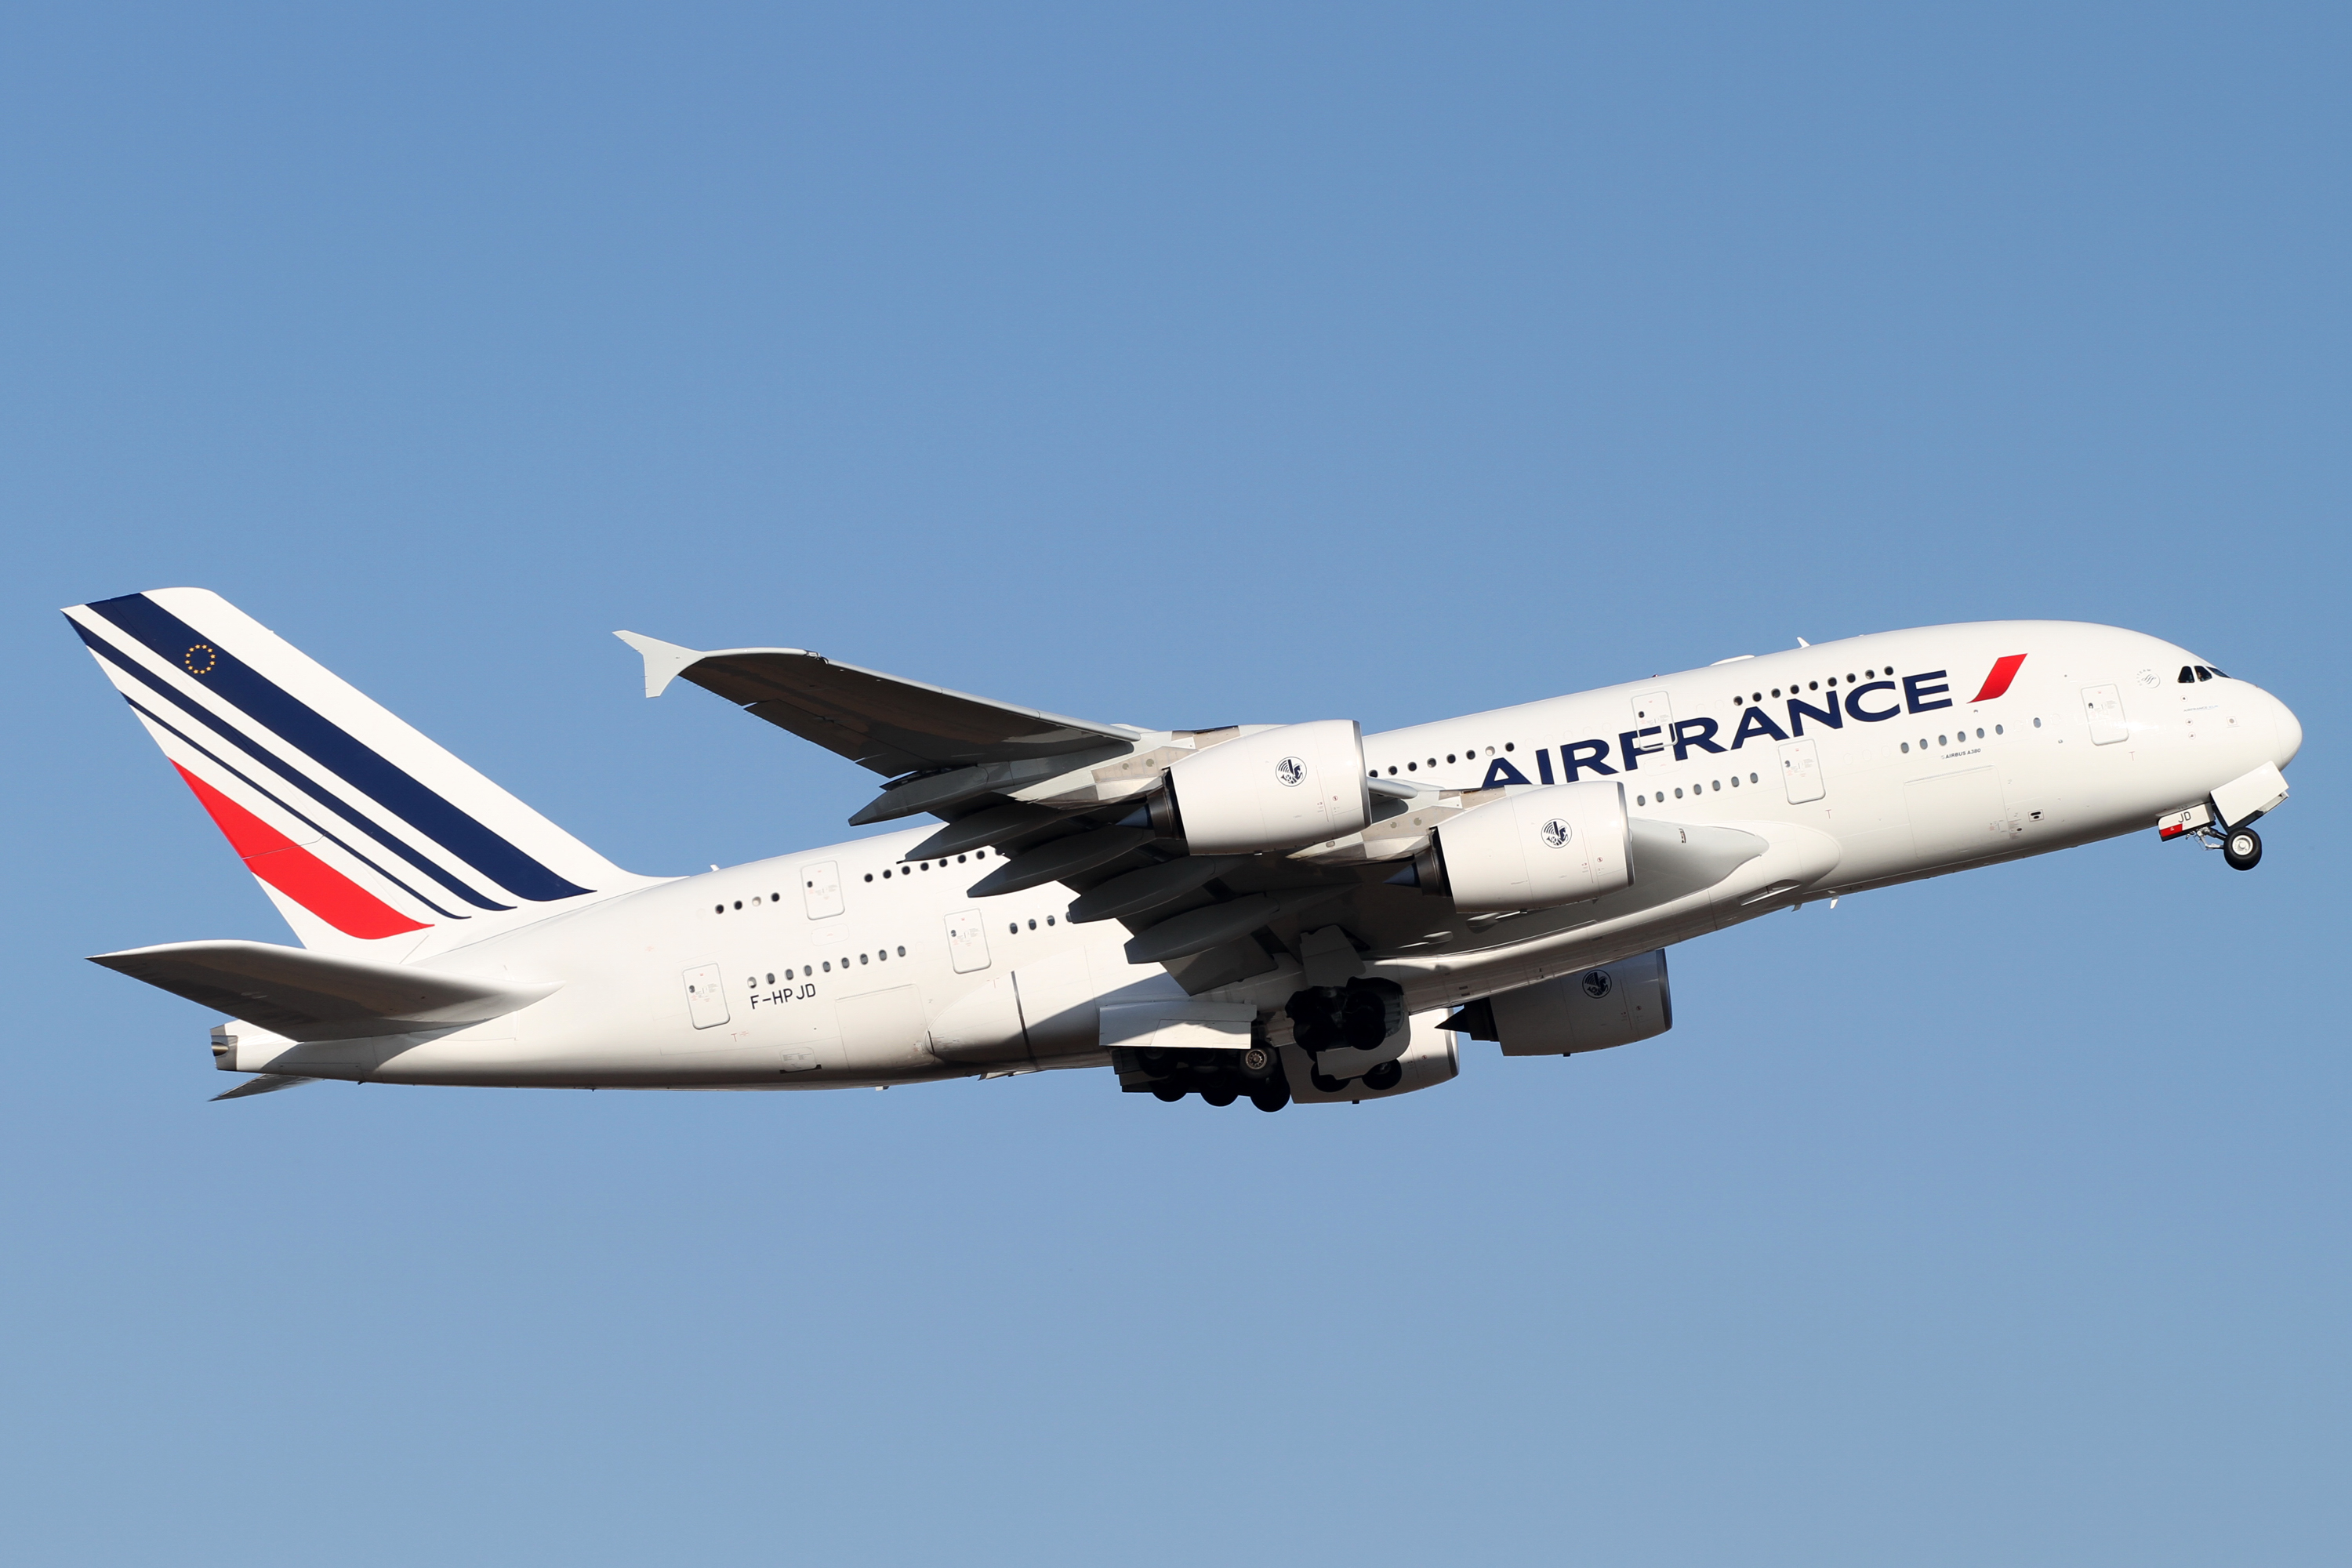 Un avion Air France. Crédits photo : Sources